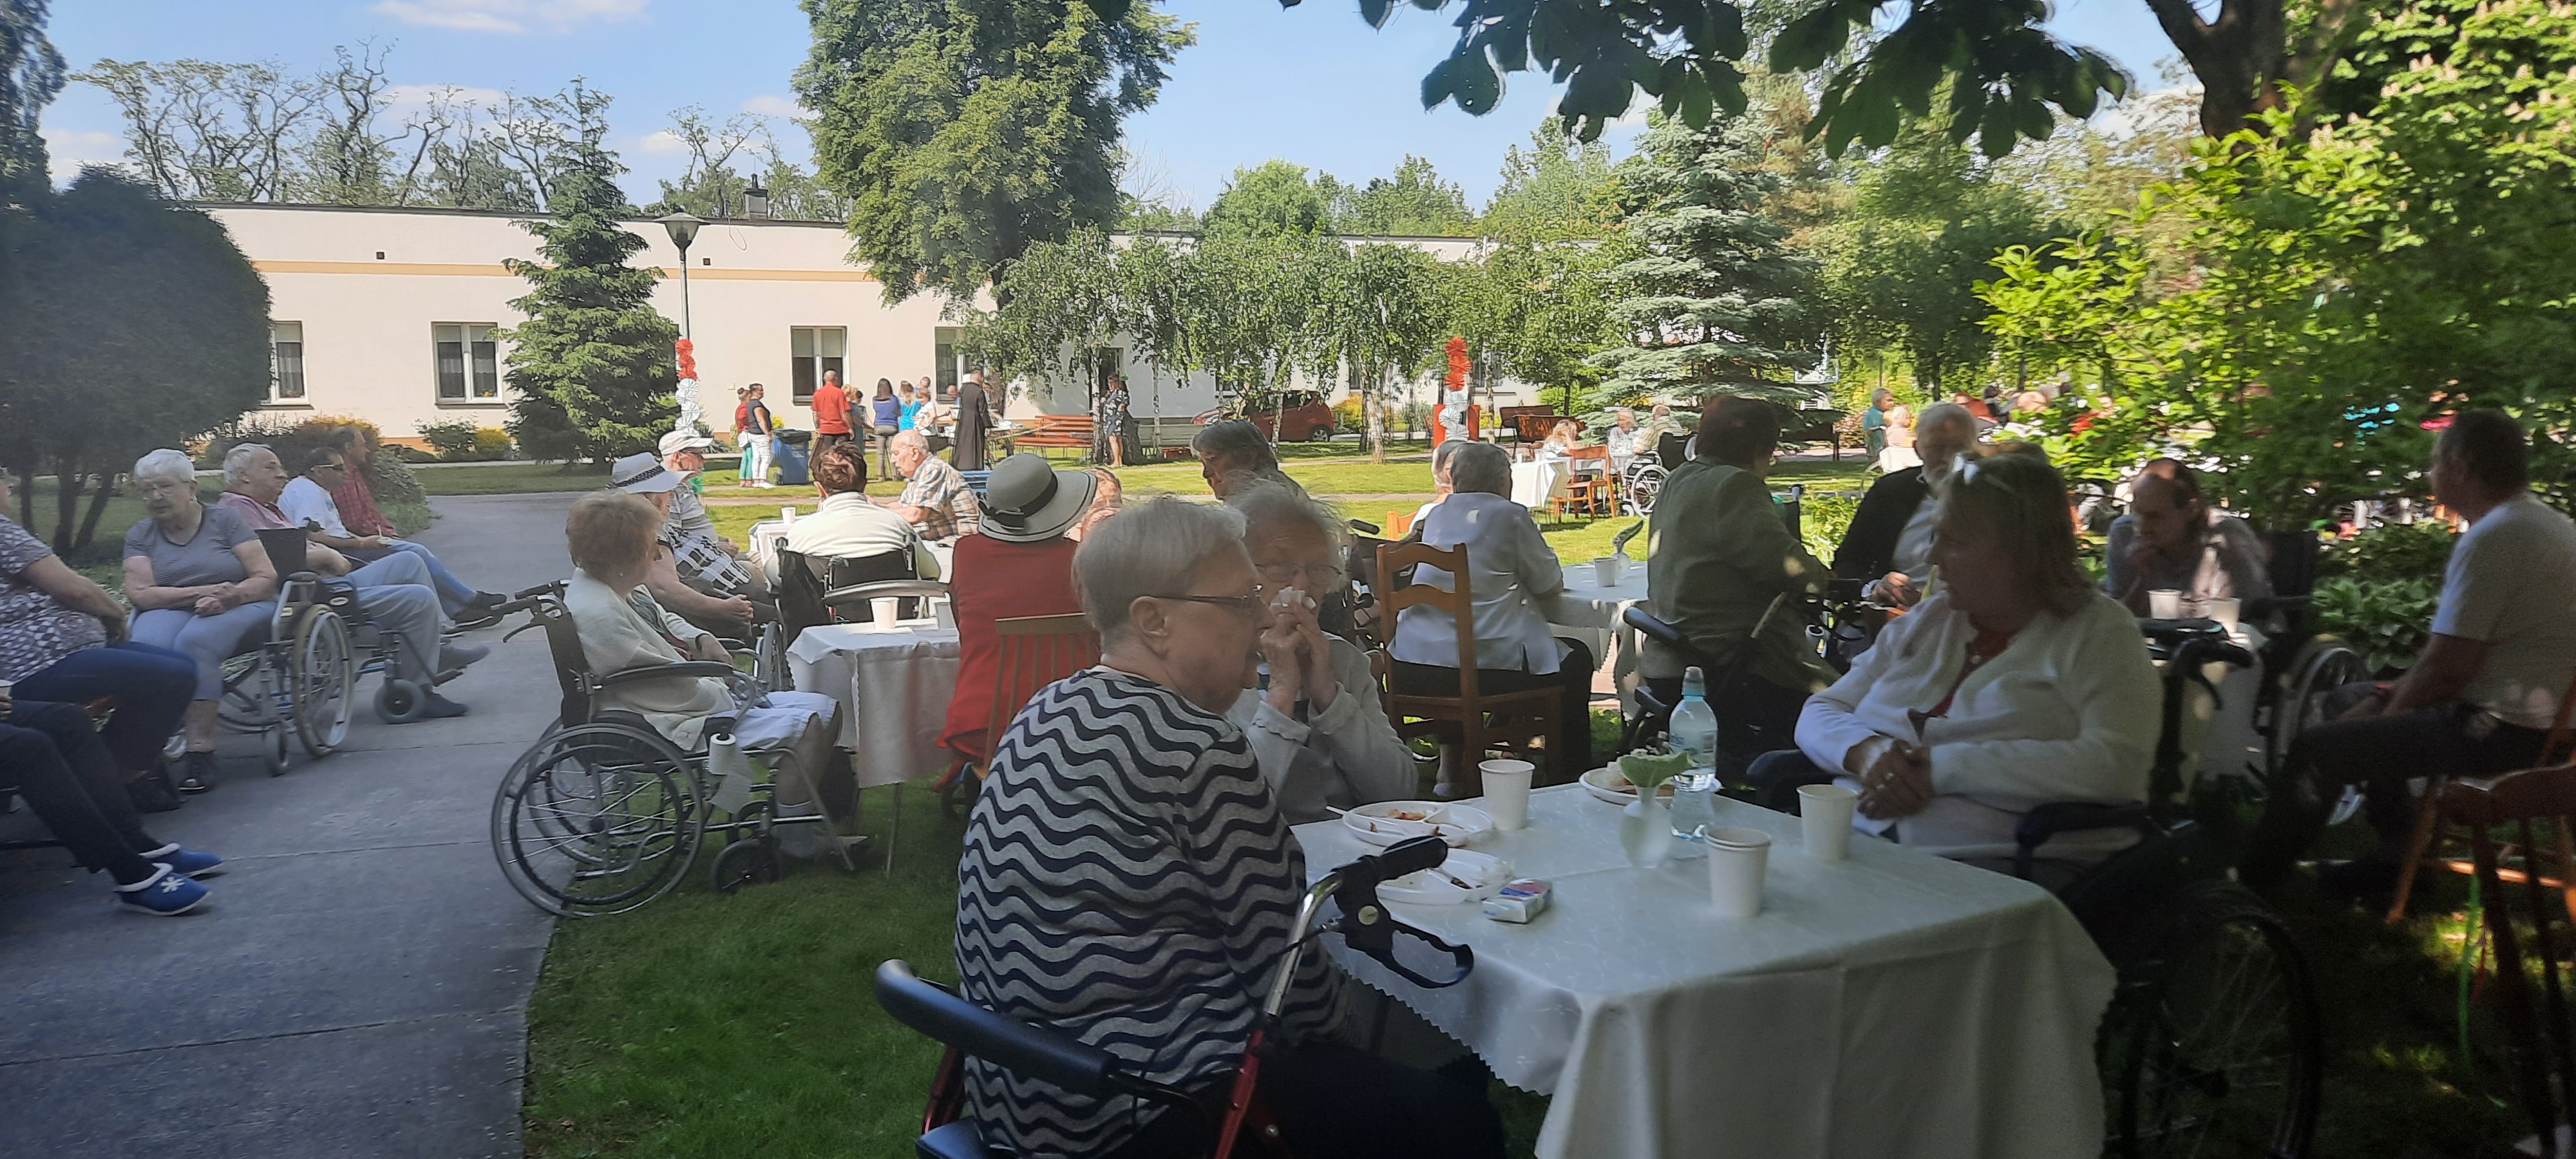 Szerokie ujęcie na imprezę trwającą na ogrodzie dps. W tle widać Seniorów siedzących przy stołach